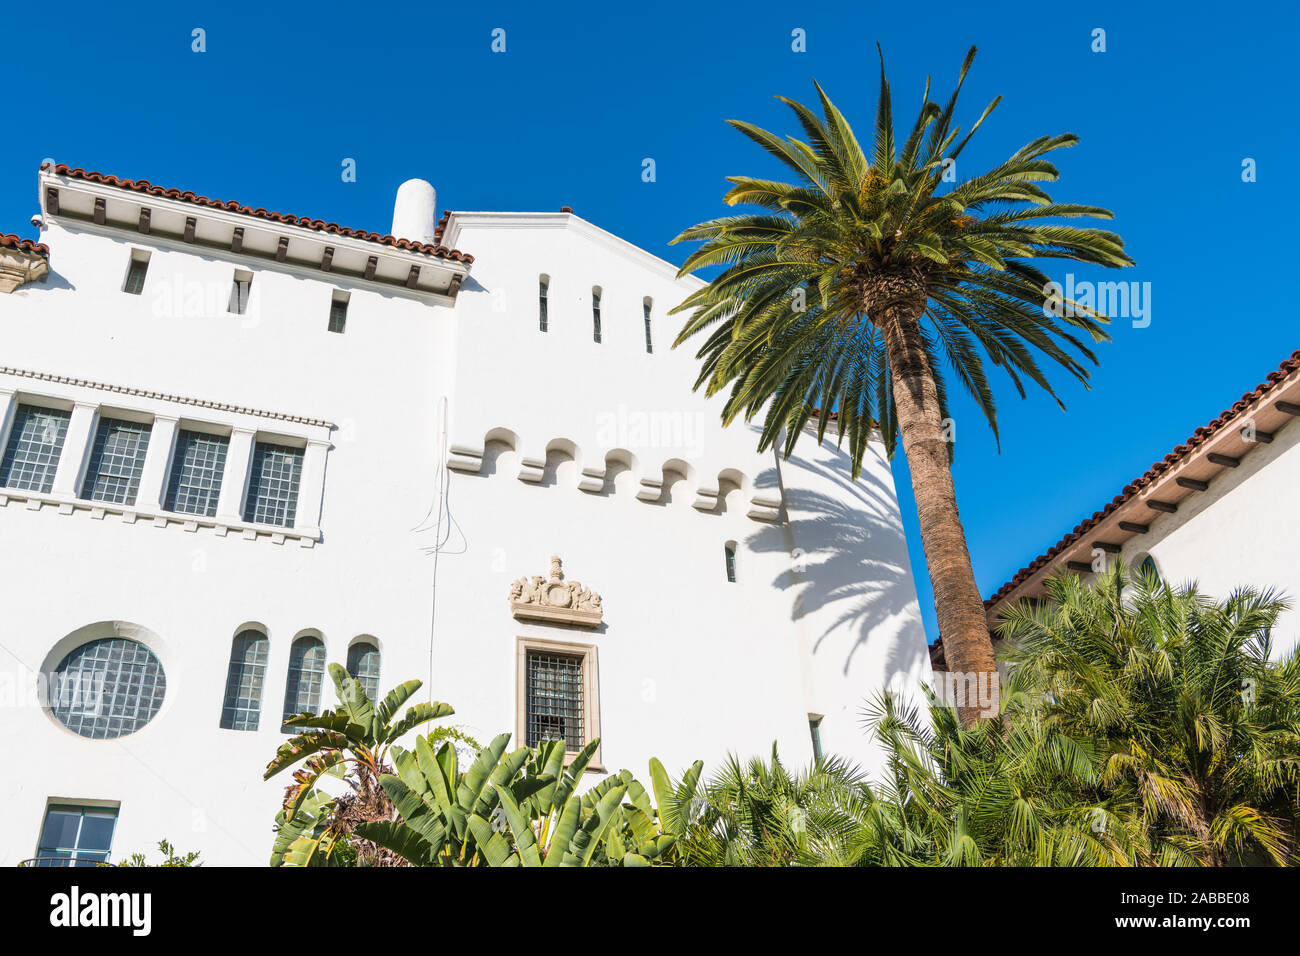 Eine Palme und ein historisches weißes Spanish Colonial Revival Architektur Stil Gebäude mit verzierten Fenstern und Verkleidung in Santa Barbara, Kalifornien, USA Stockfoto